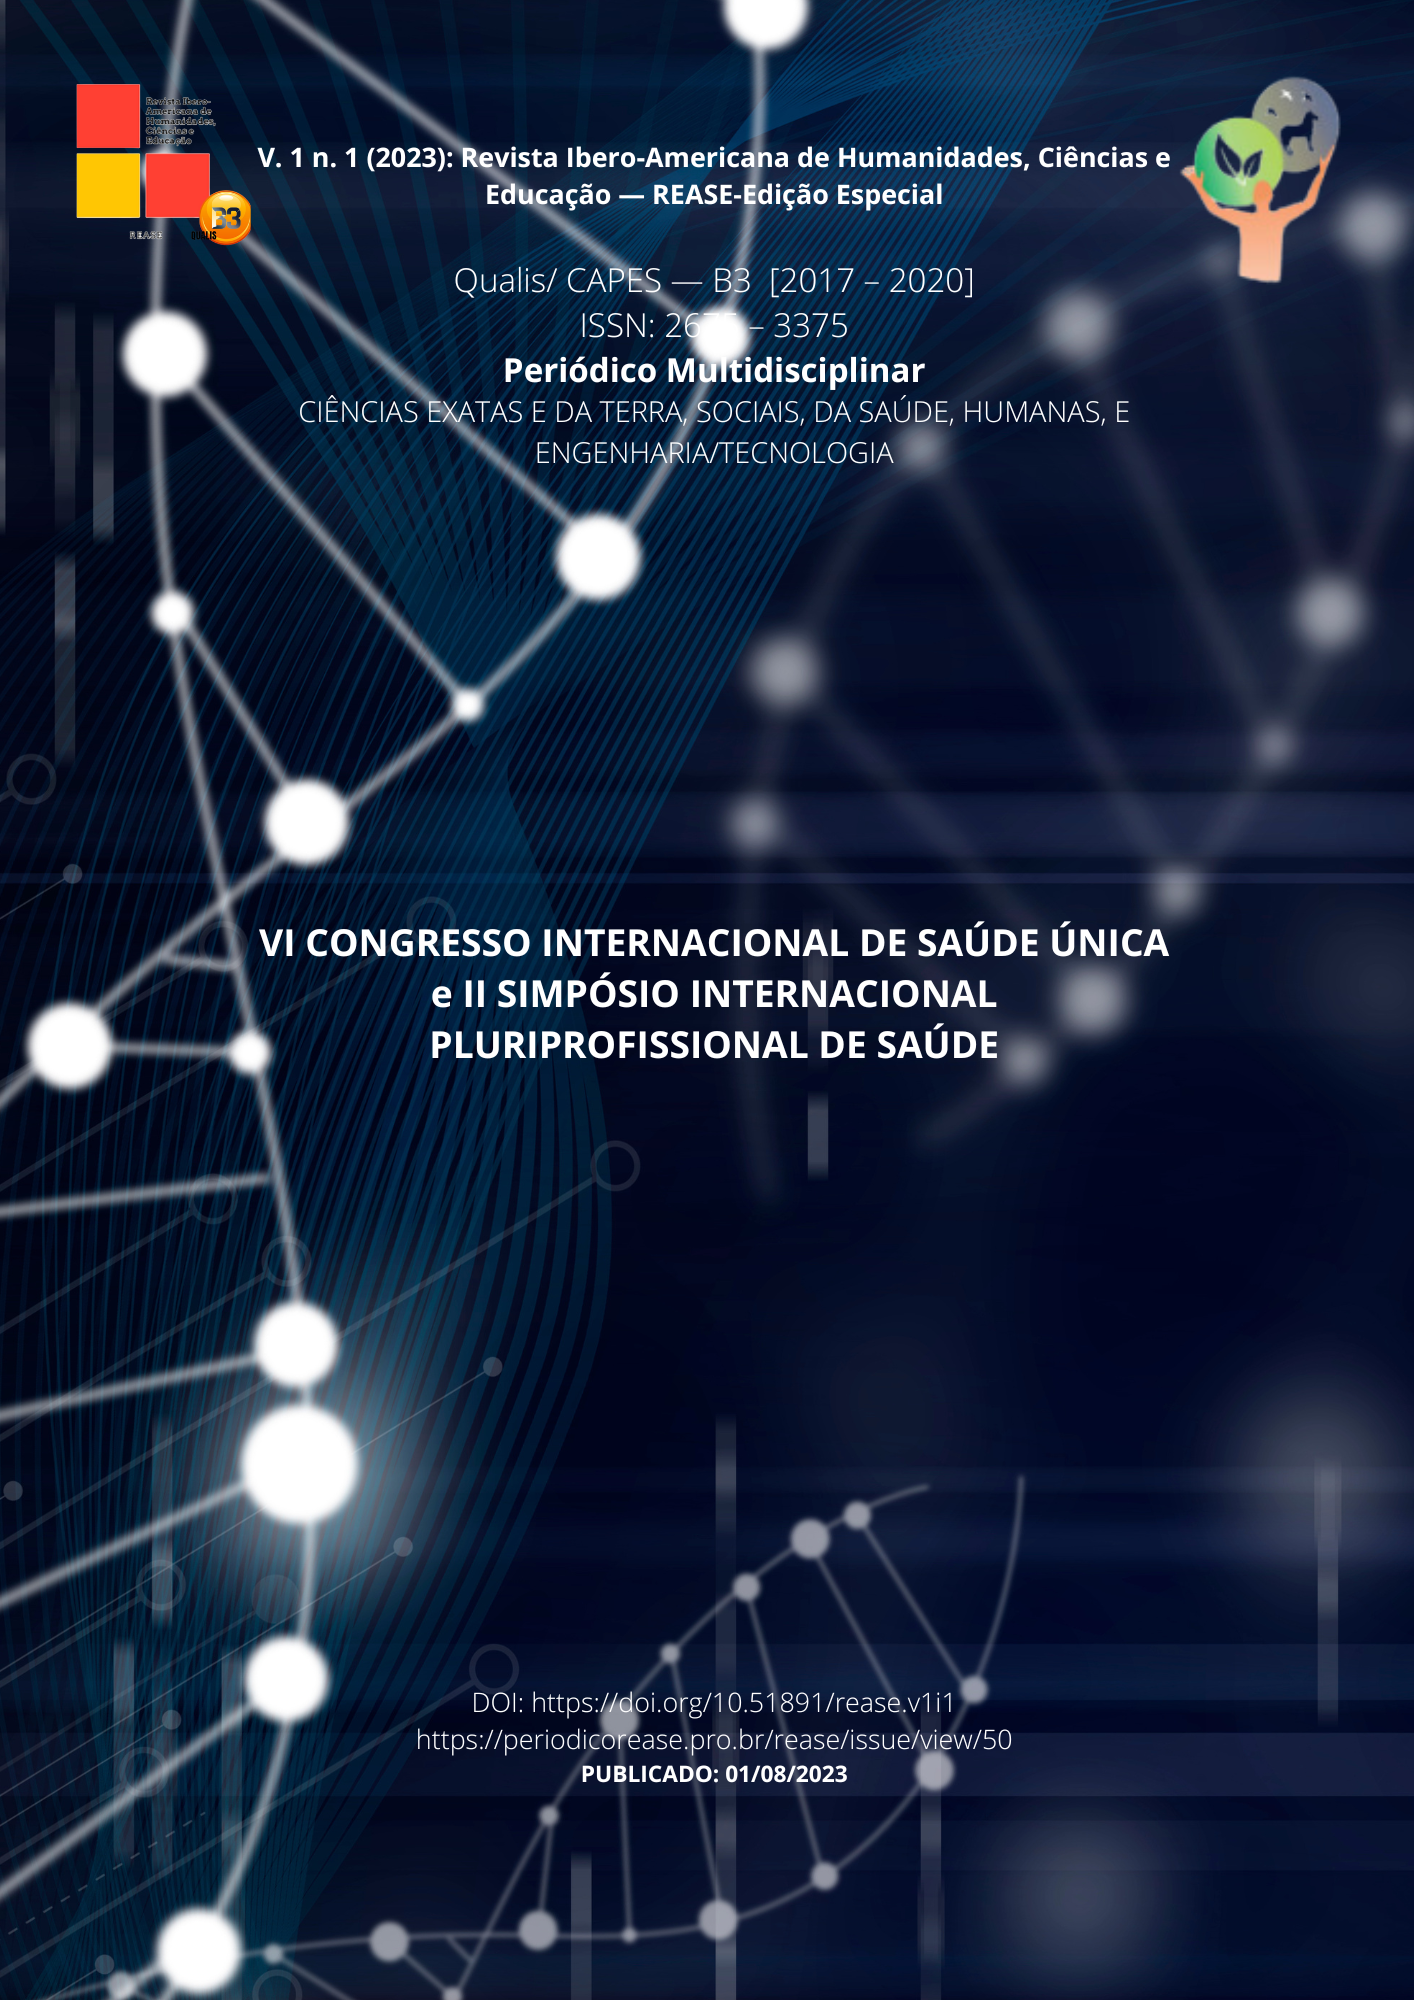 					Ver Vol. 1 (2023): Revista Ibero-Americana de Humanidades, Ciências e Educação- REASE - Edição Especial
				